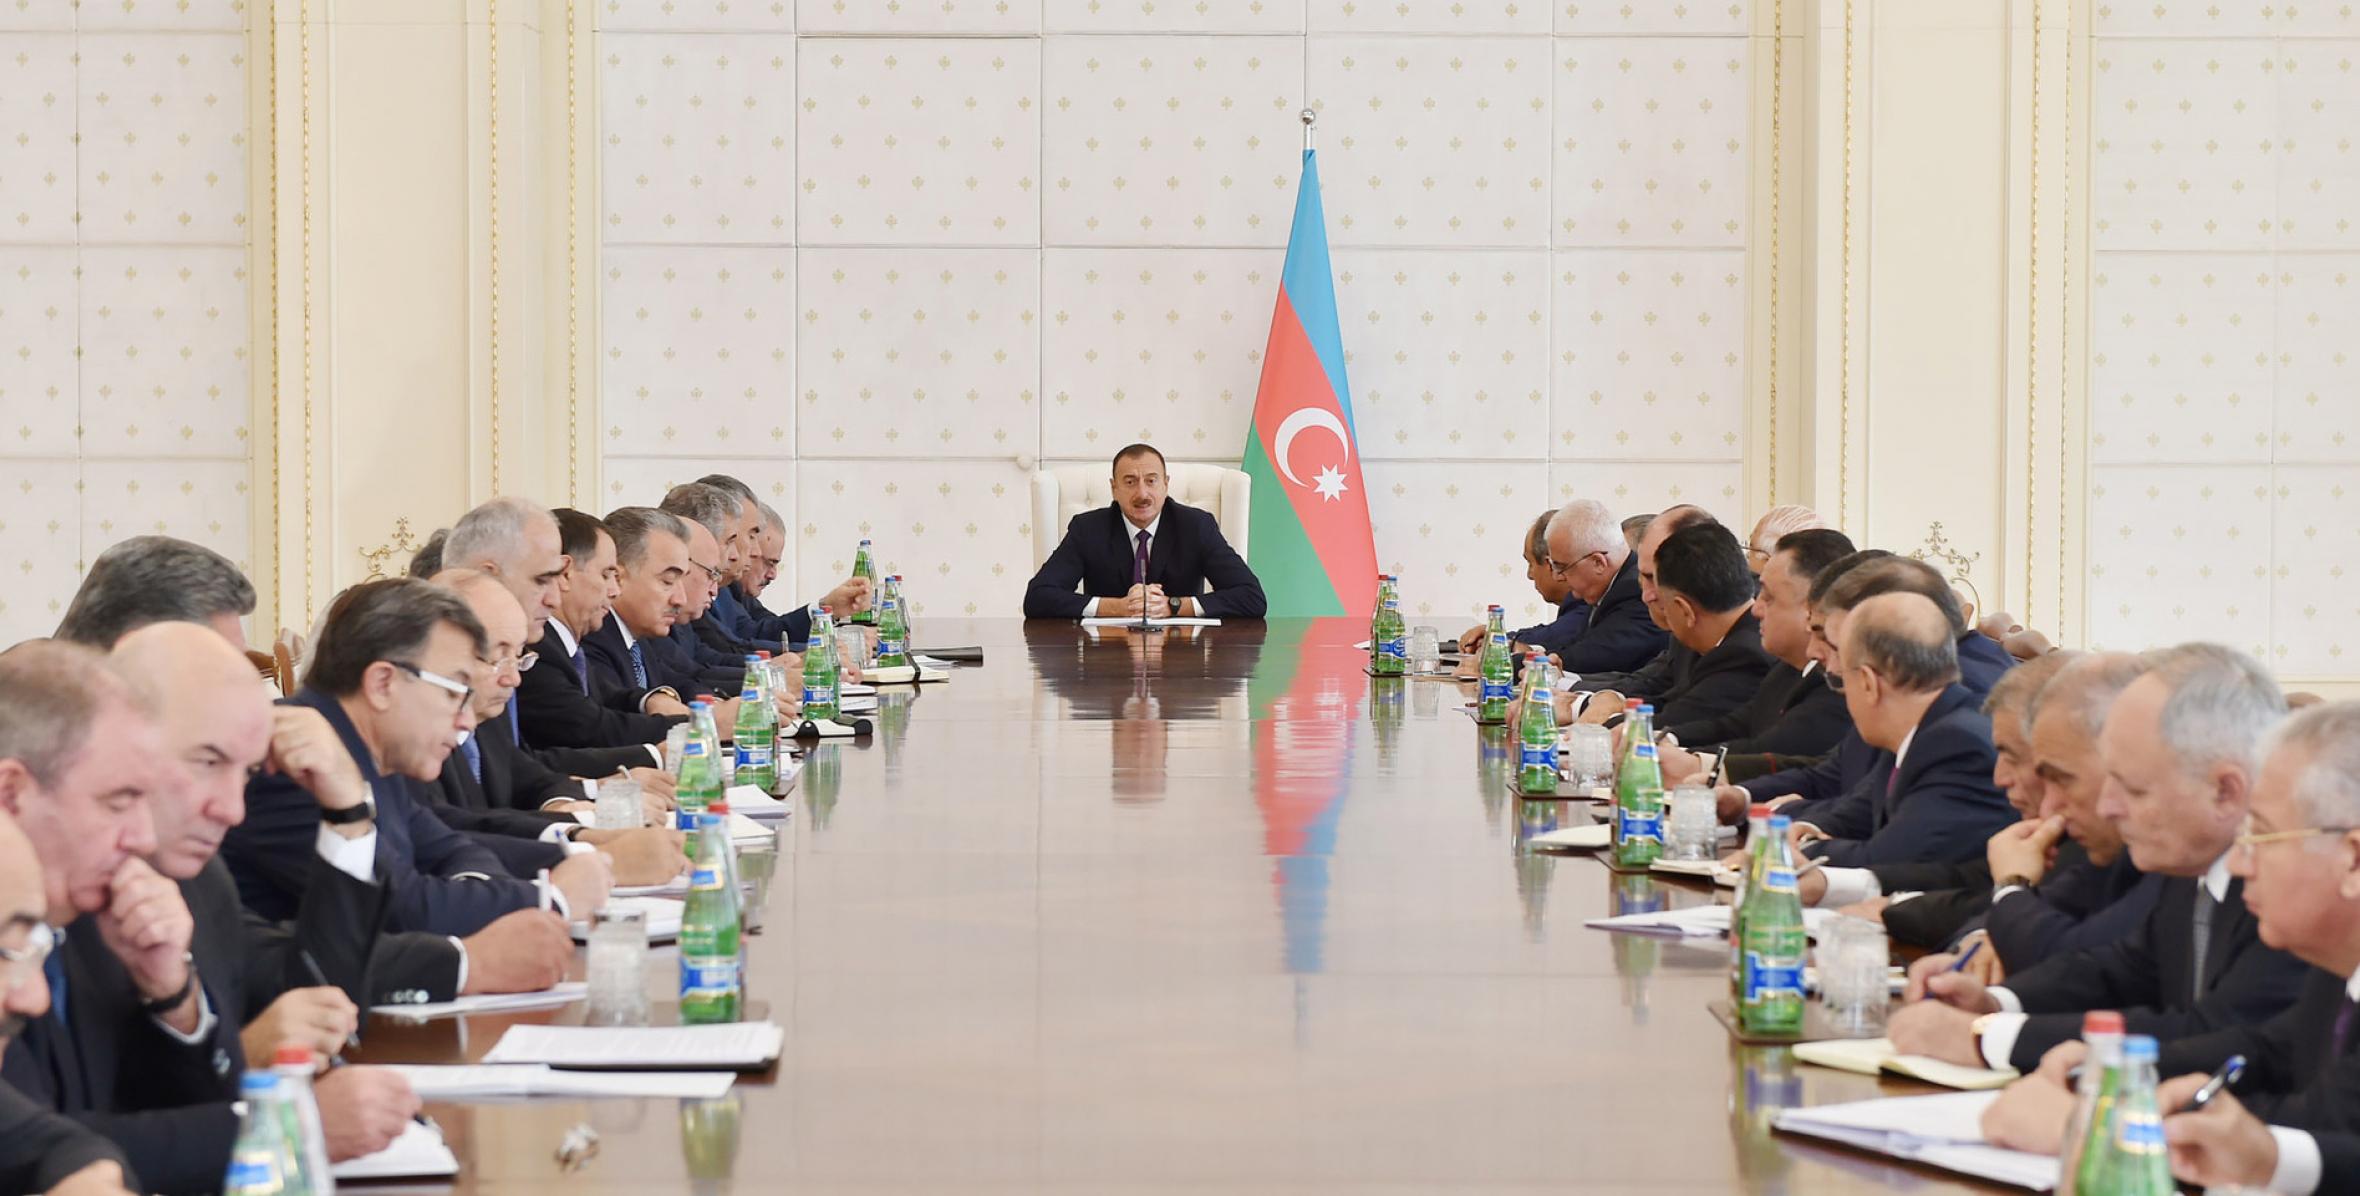 Заключительная речь Ильхама Алиева на заседании Кабинета Министров,посвященном итогам социально-экономического развития за девять месяцев 2014 года и предстоящим задачам